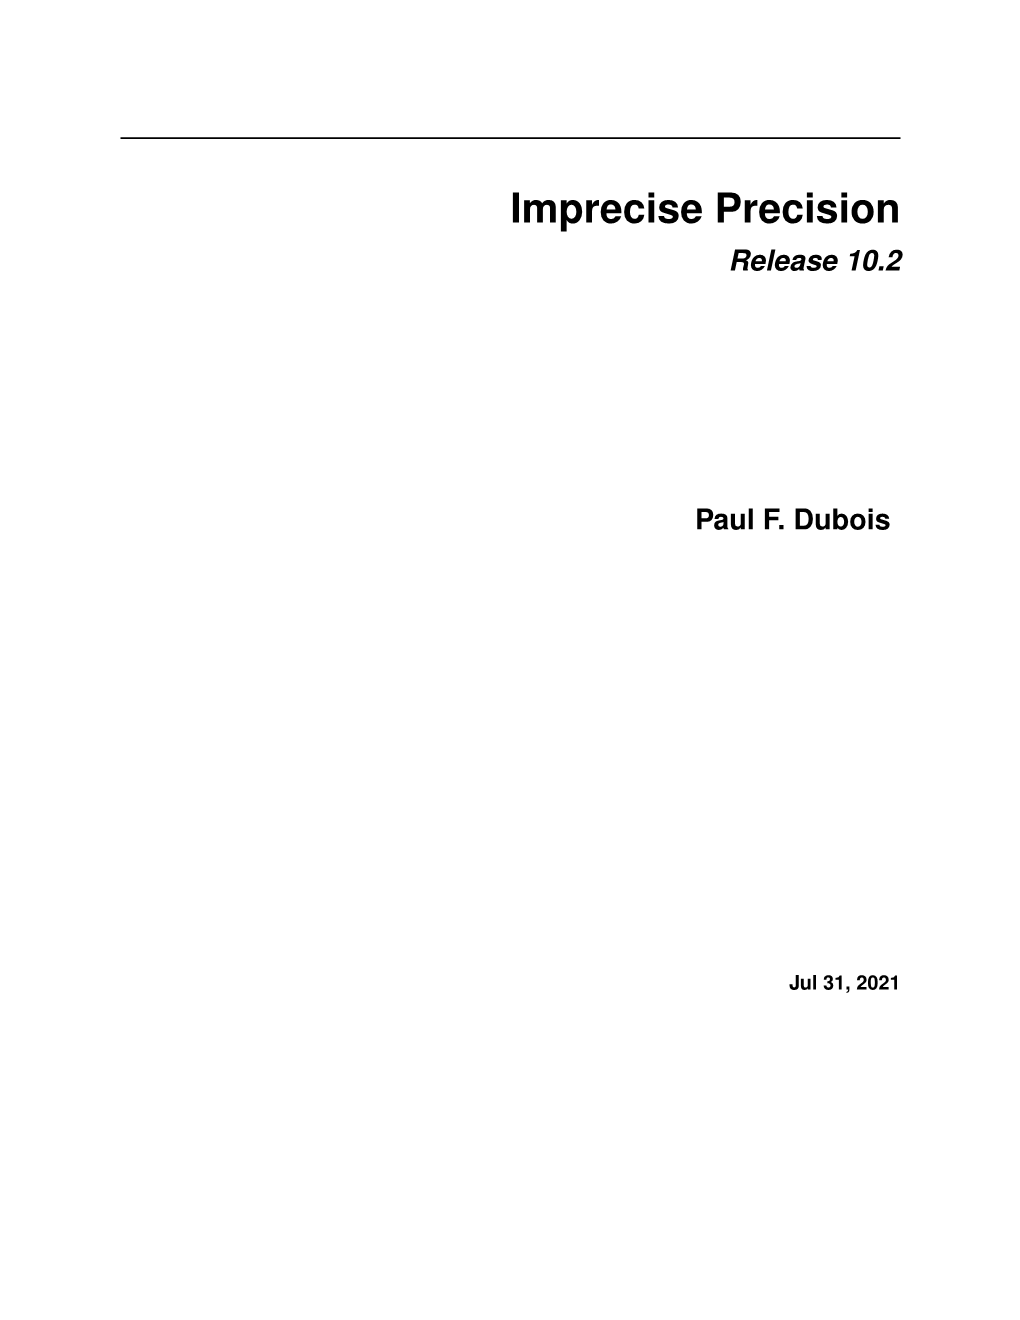 Imprecise Precision Release 10.2